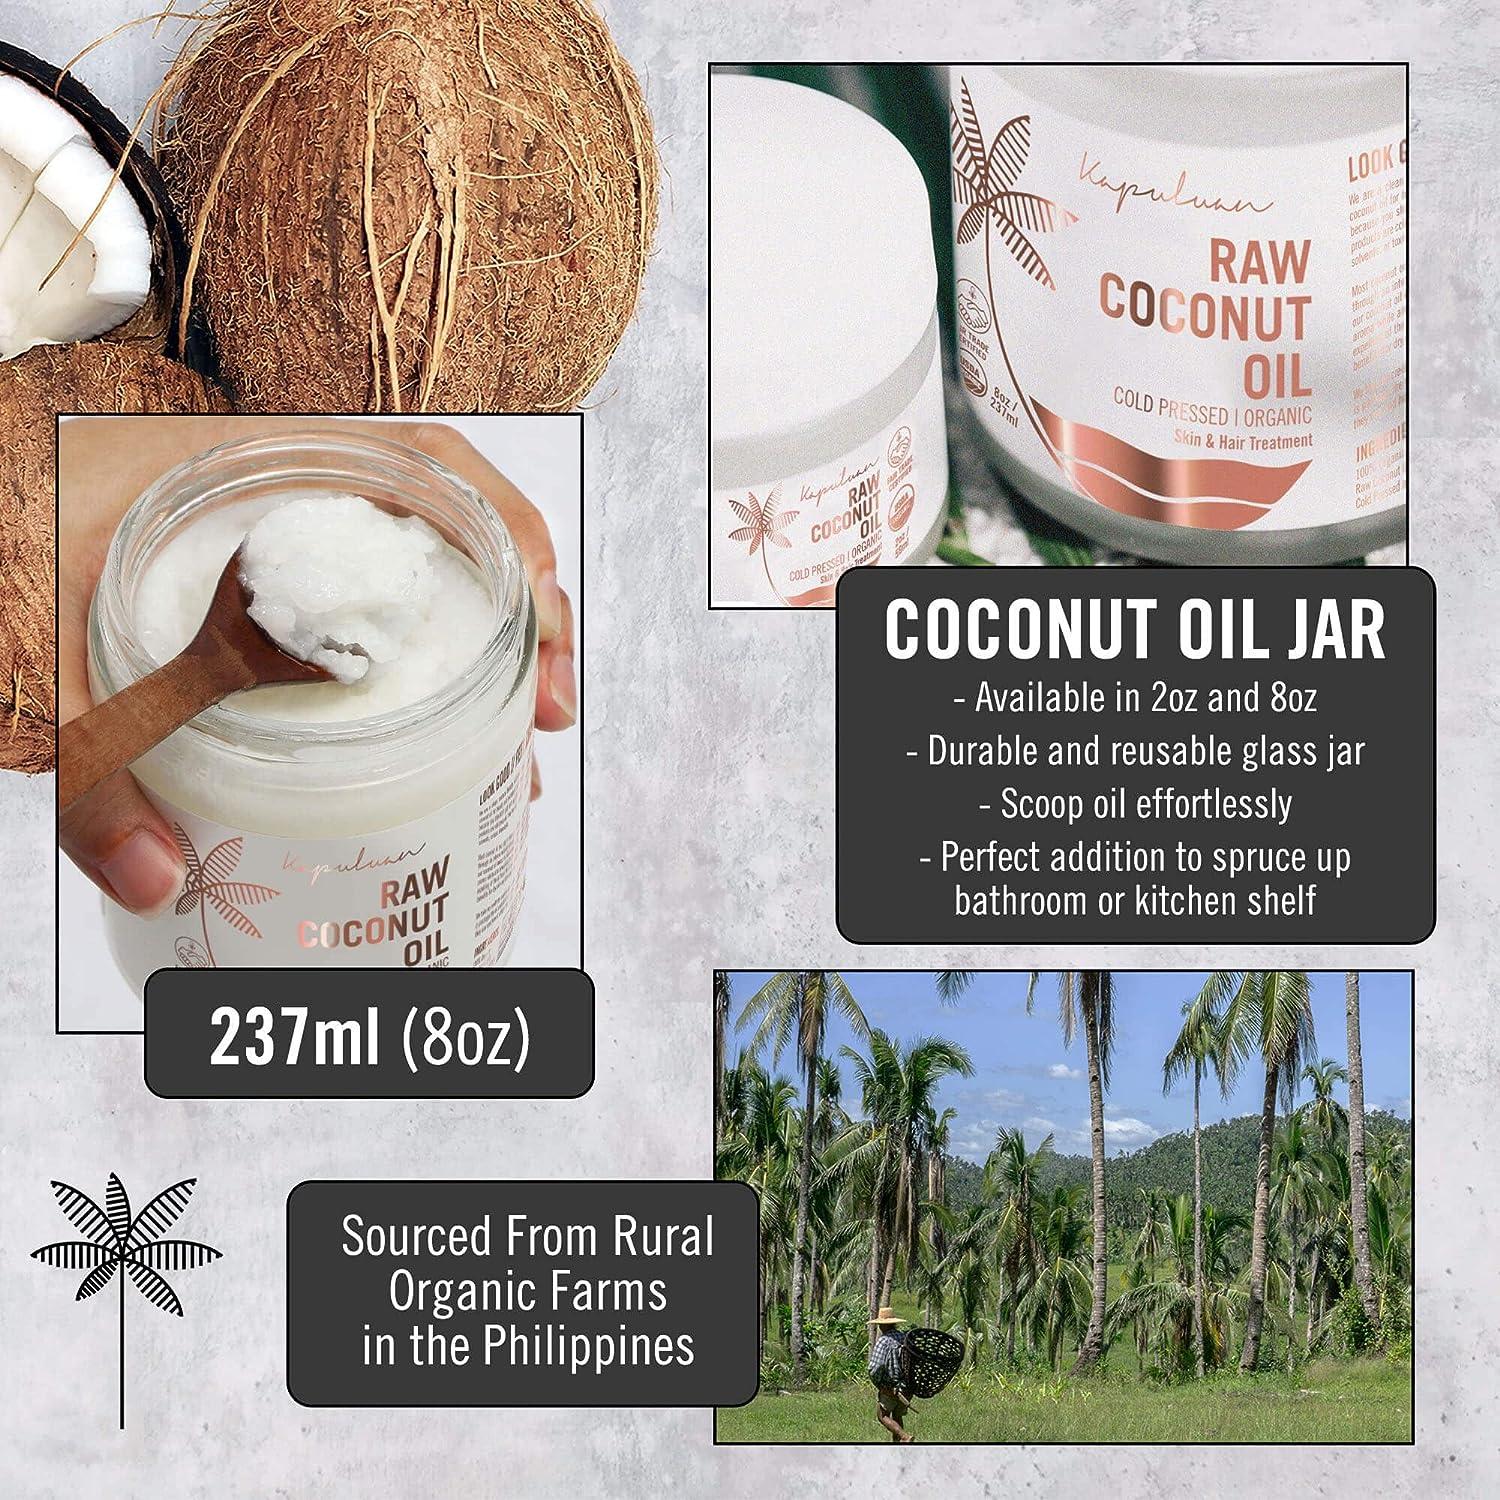 Aceite de coco – Oil Works®